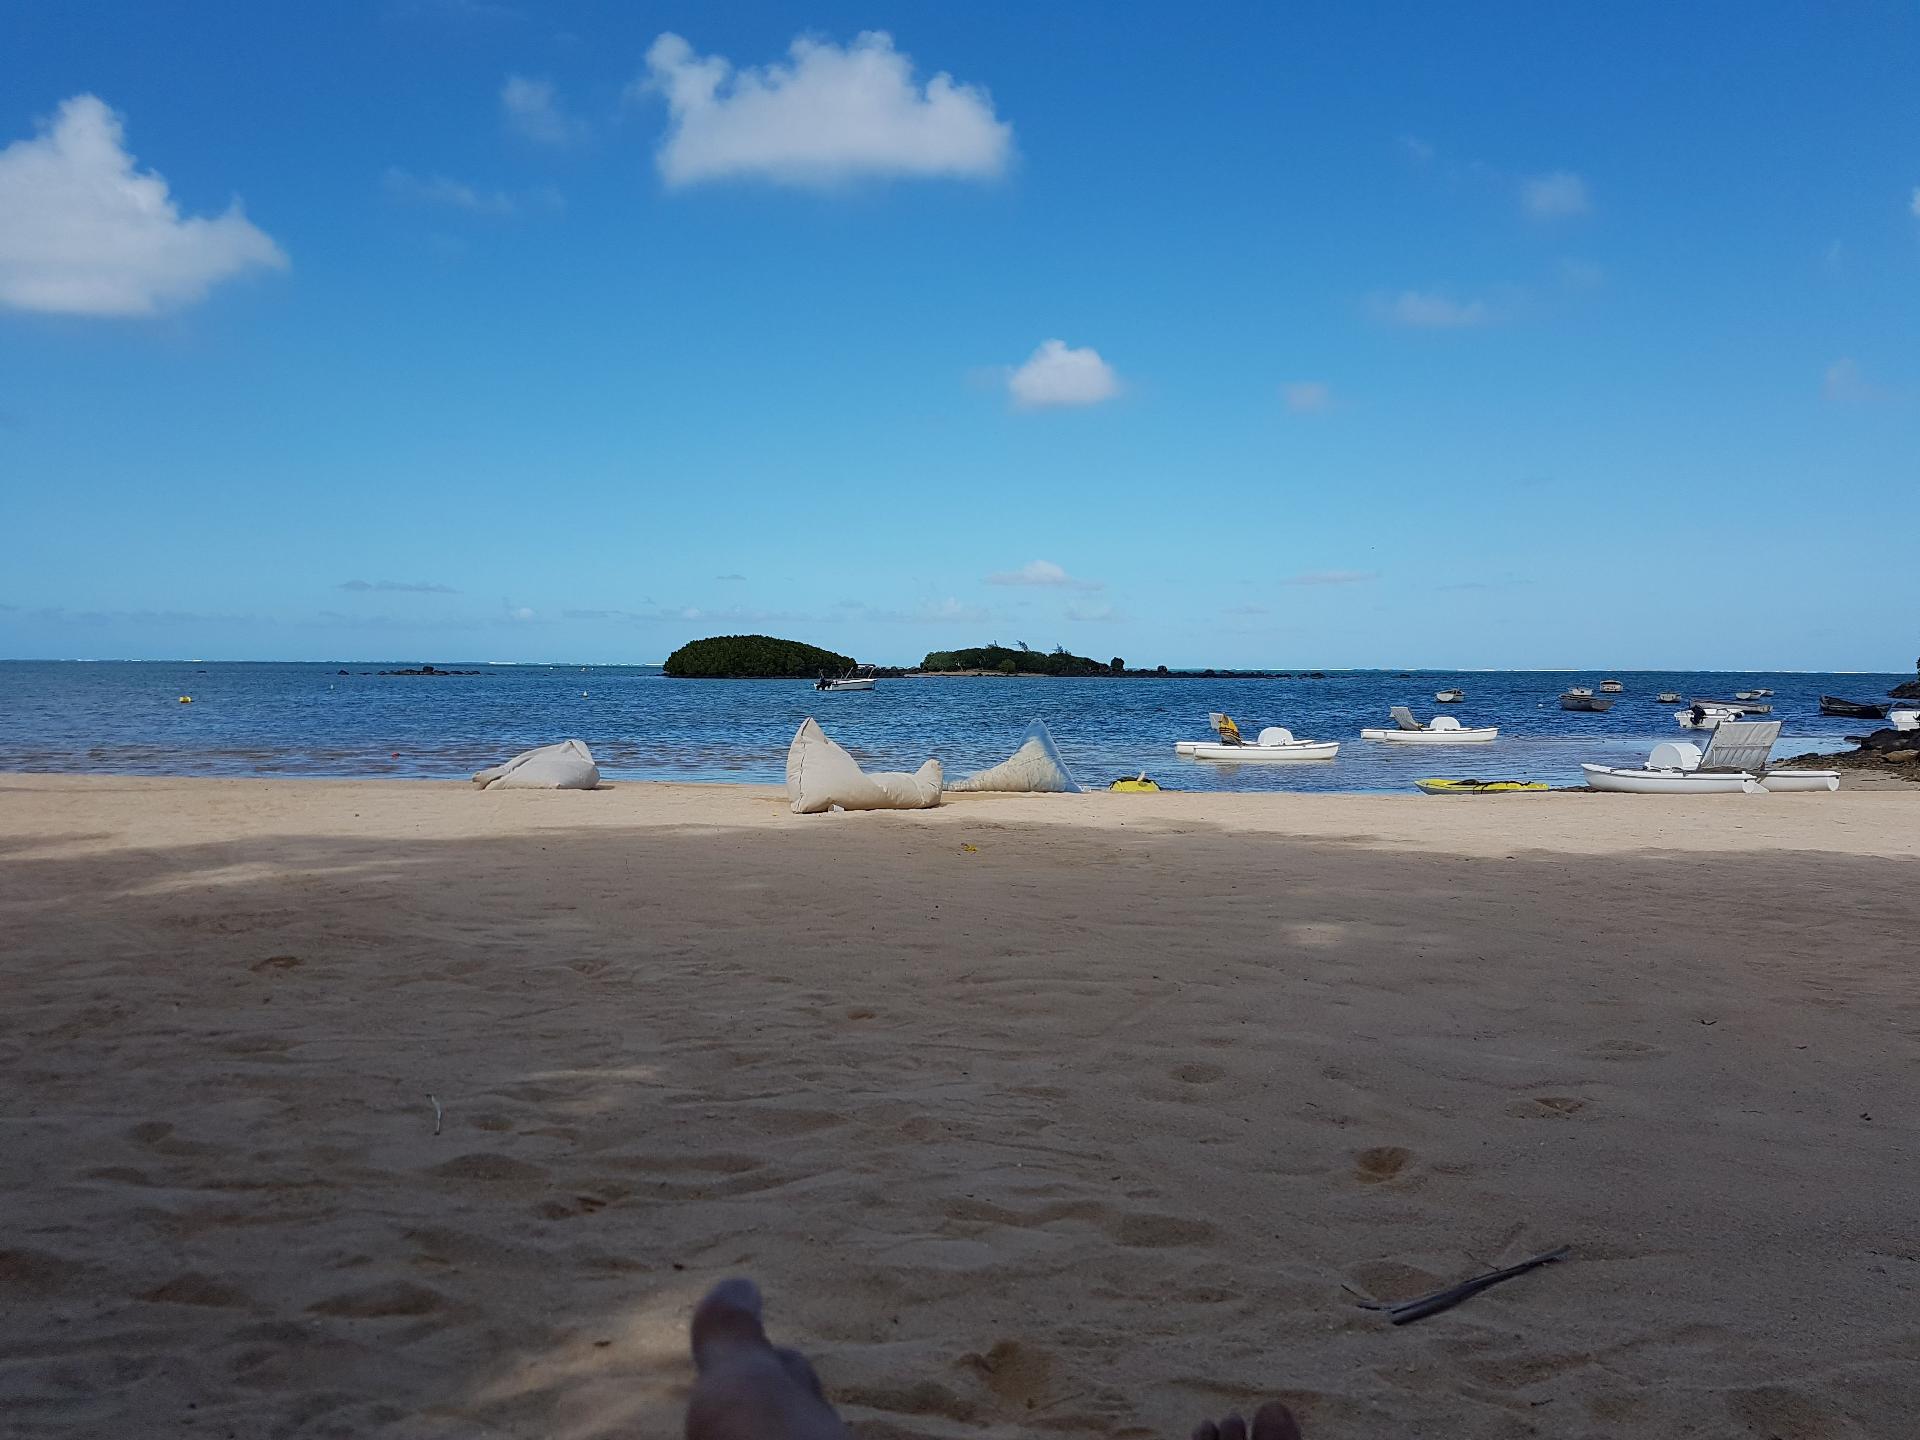 Ferienwohnung für 6 Personen in Roches Noire, Ferienhaus auf Mauritius